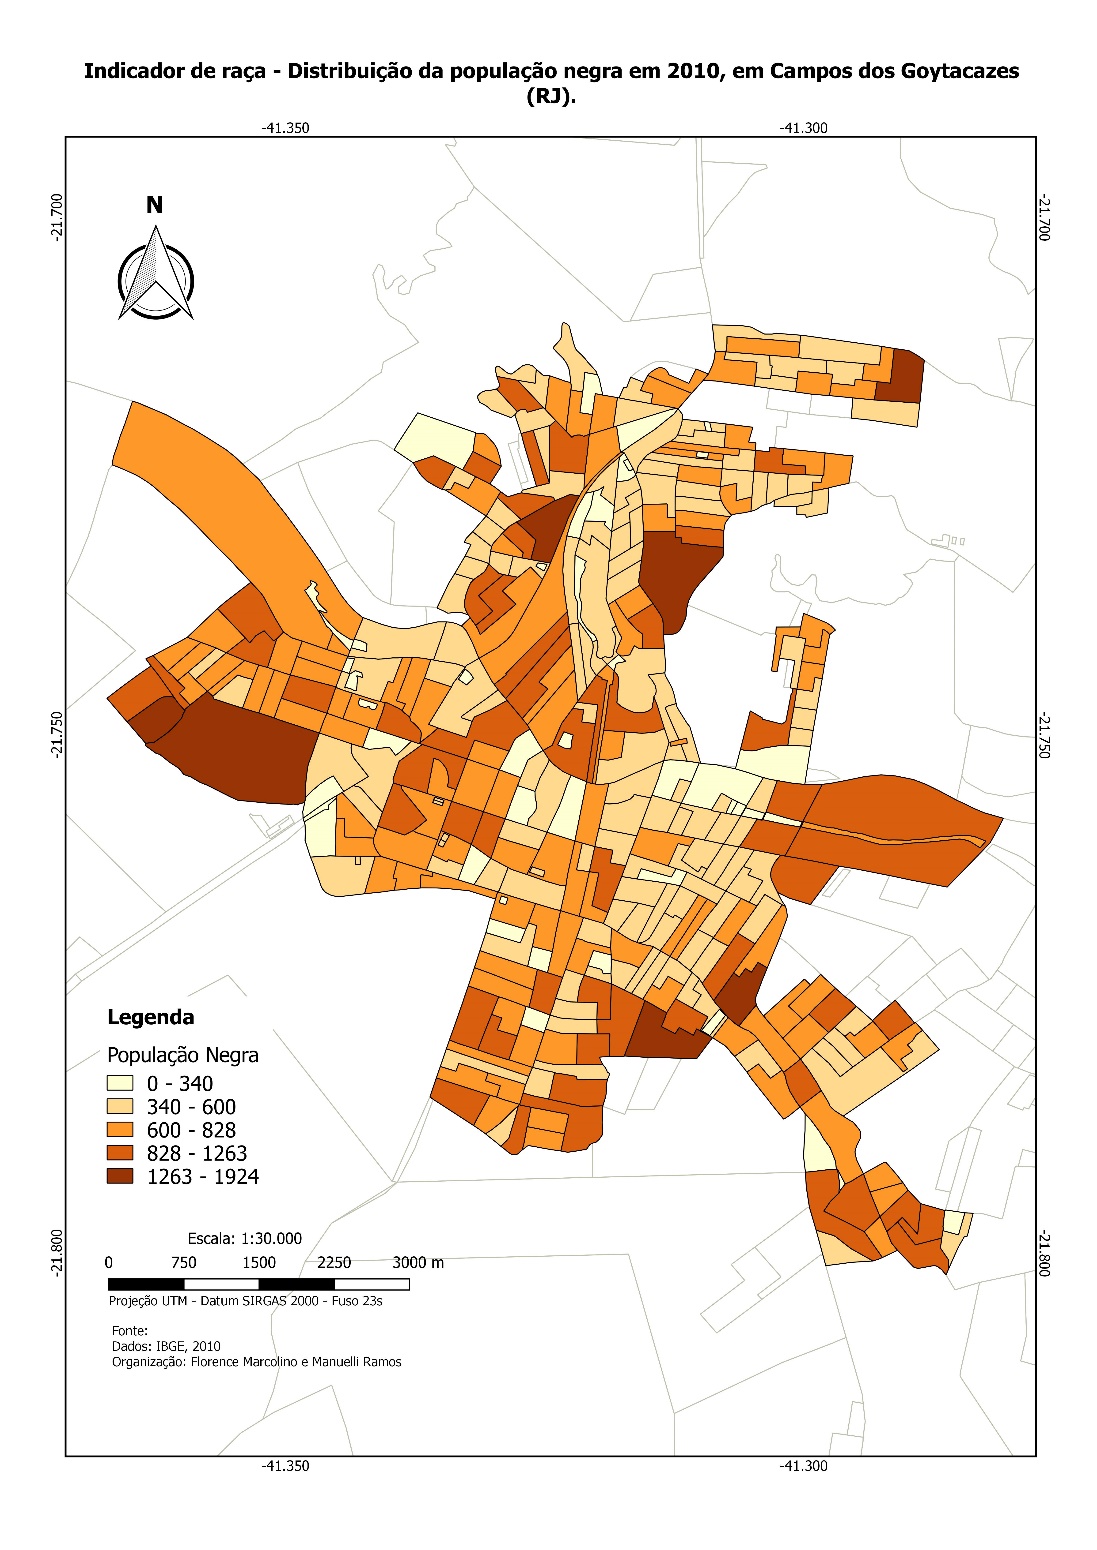 Percentual da população autodeclarada preta ou parda, por bairros, Campos dos Goytacazes, 2010